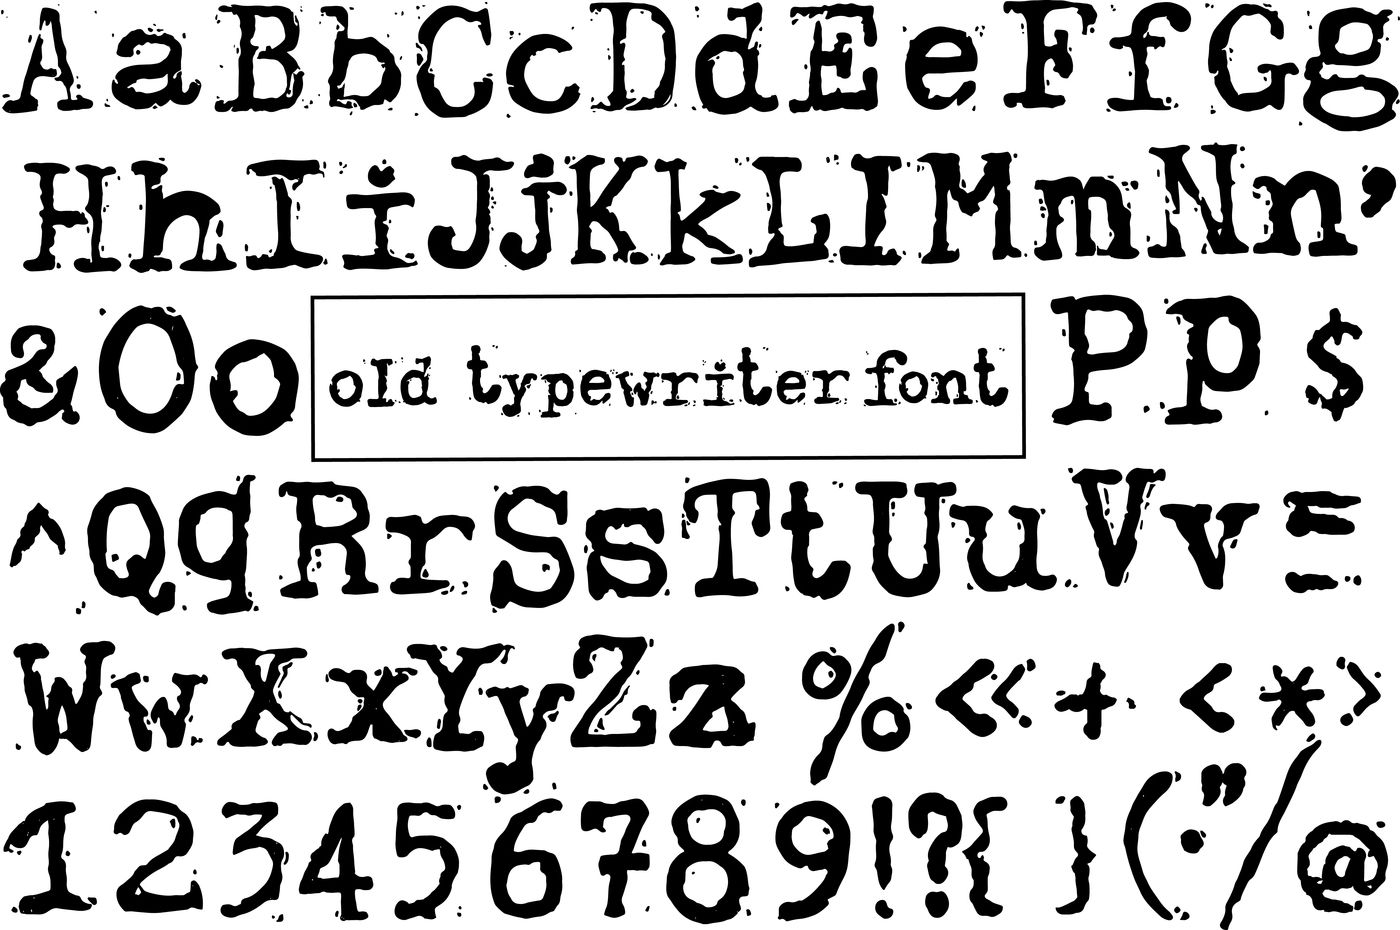 Typewriter Font Type Font American Typewriter Font Old -  Portugal